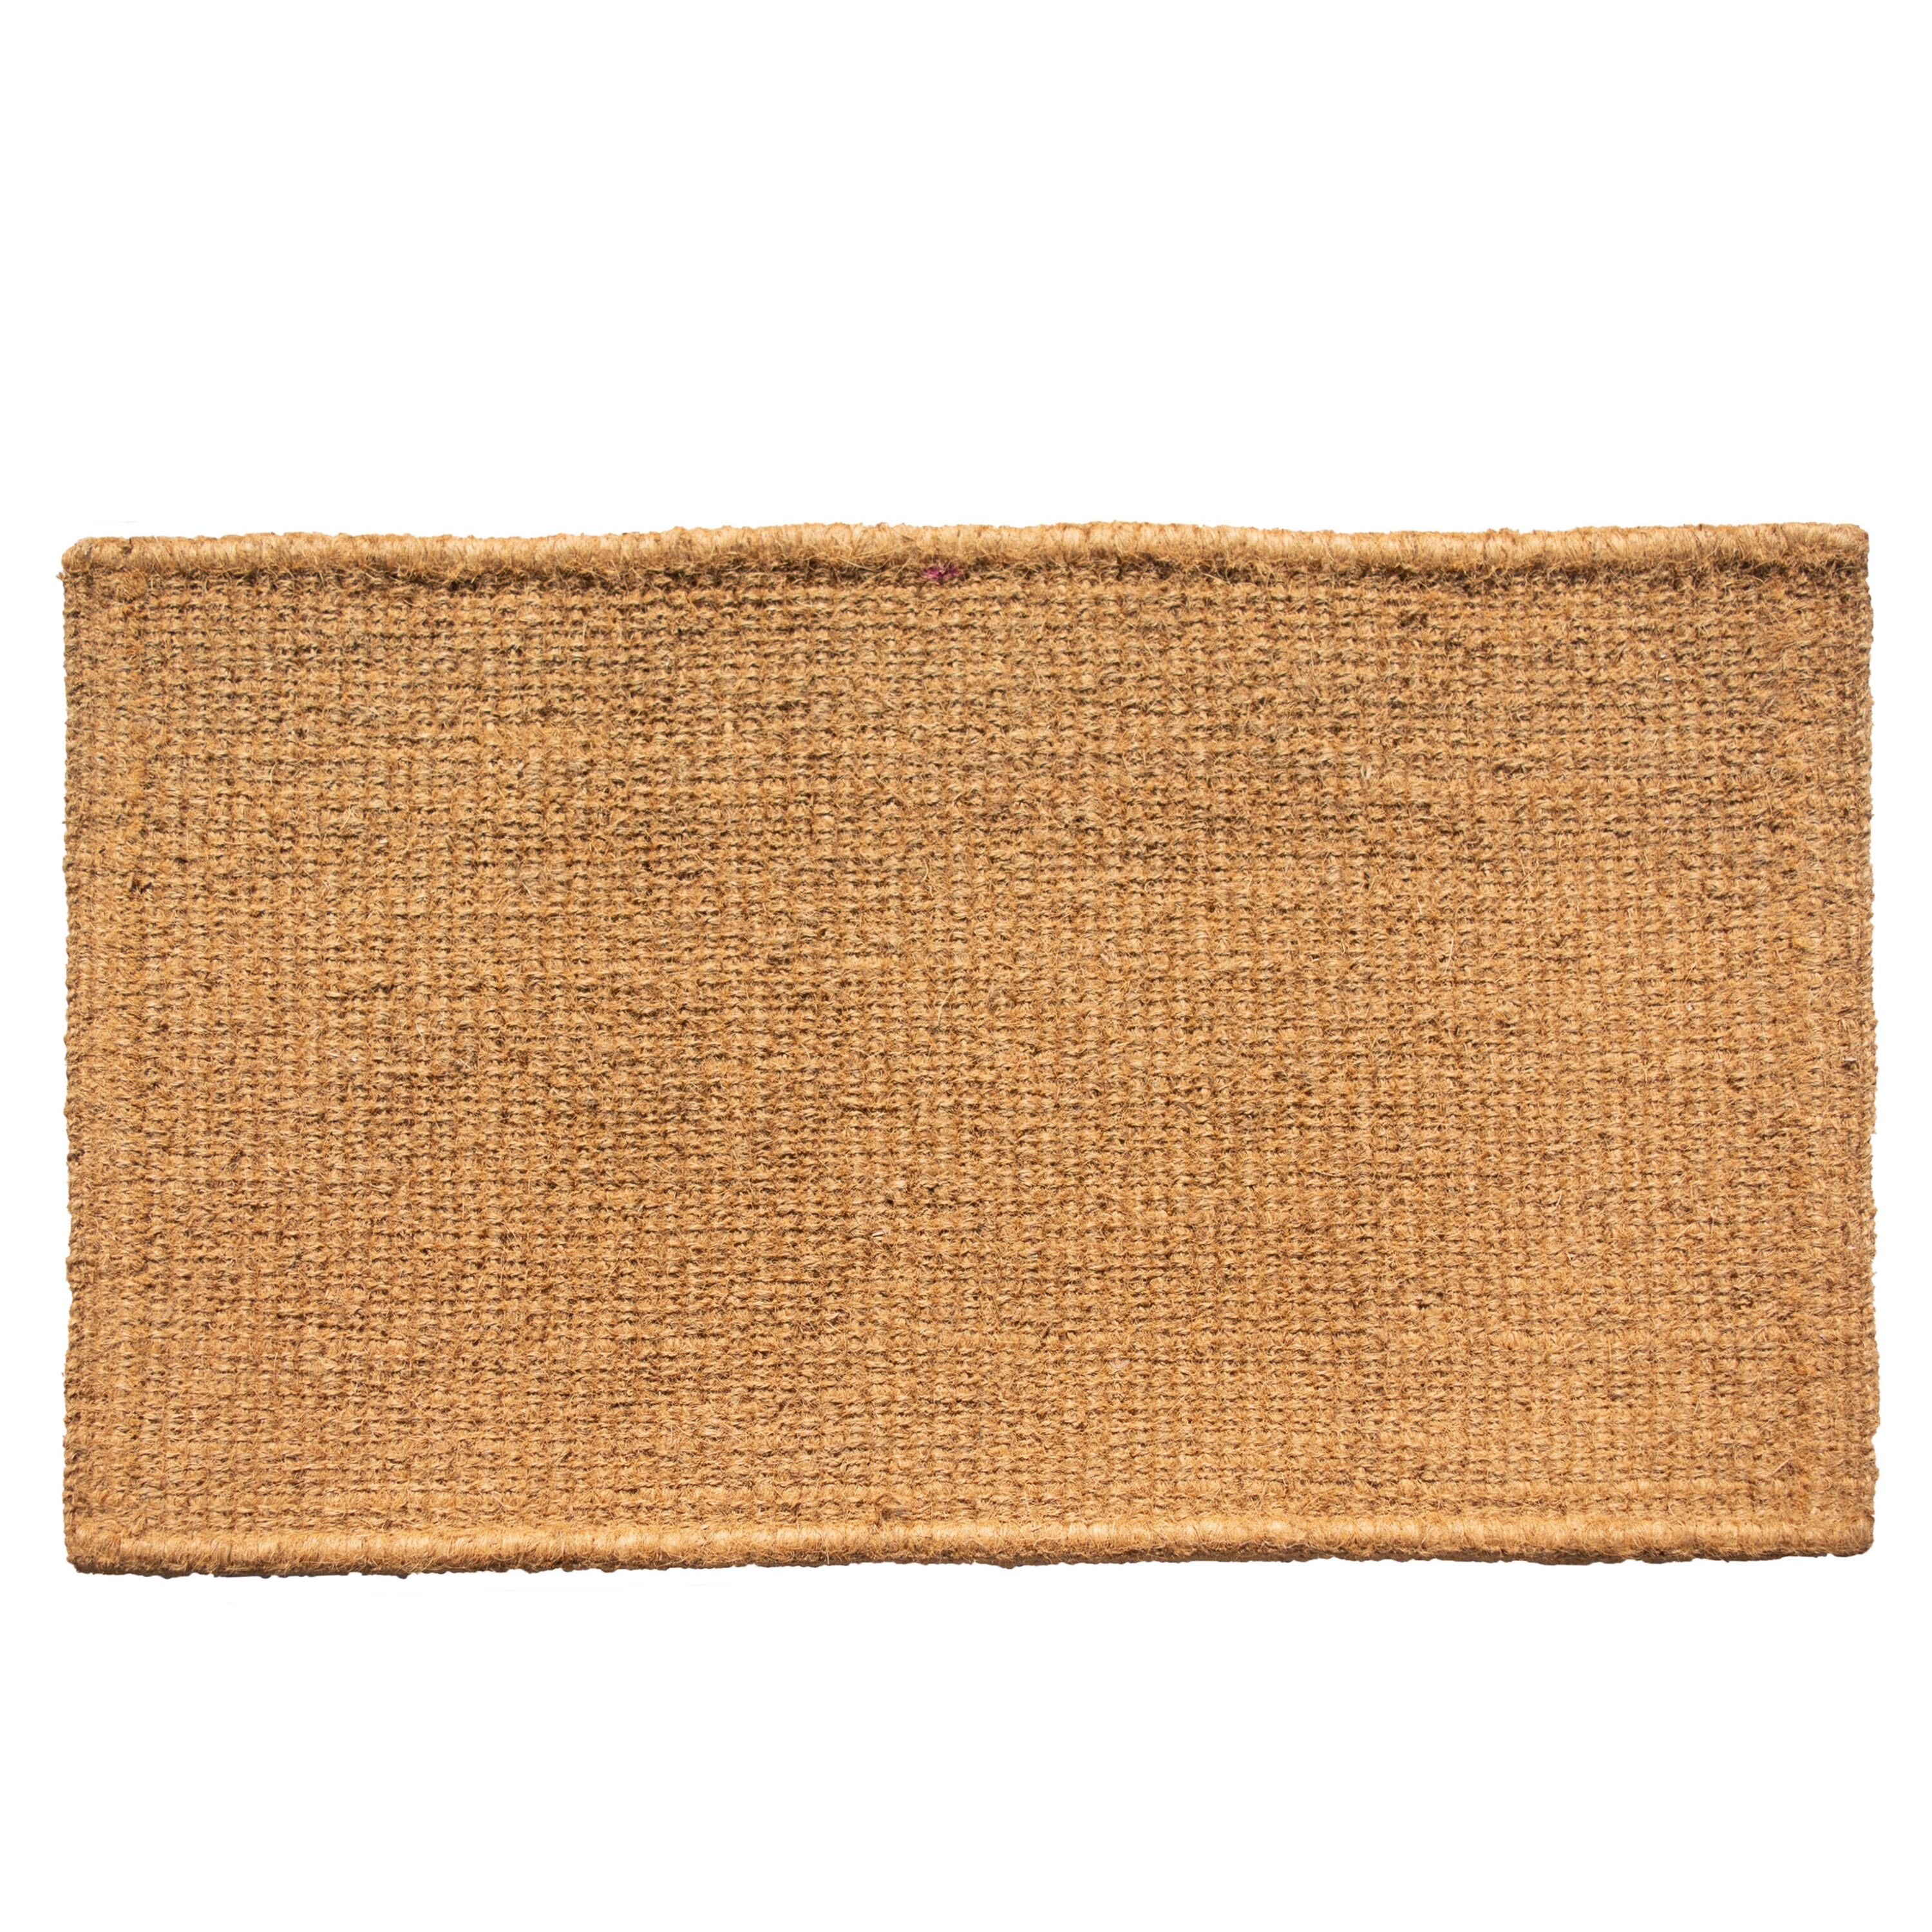 Calloway Mills Garbo; Extra-Thick Outdoor Rectangular Doormat